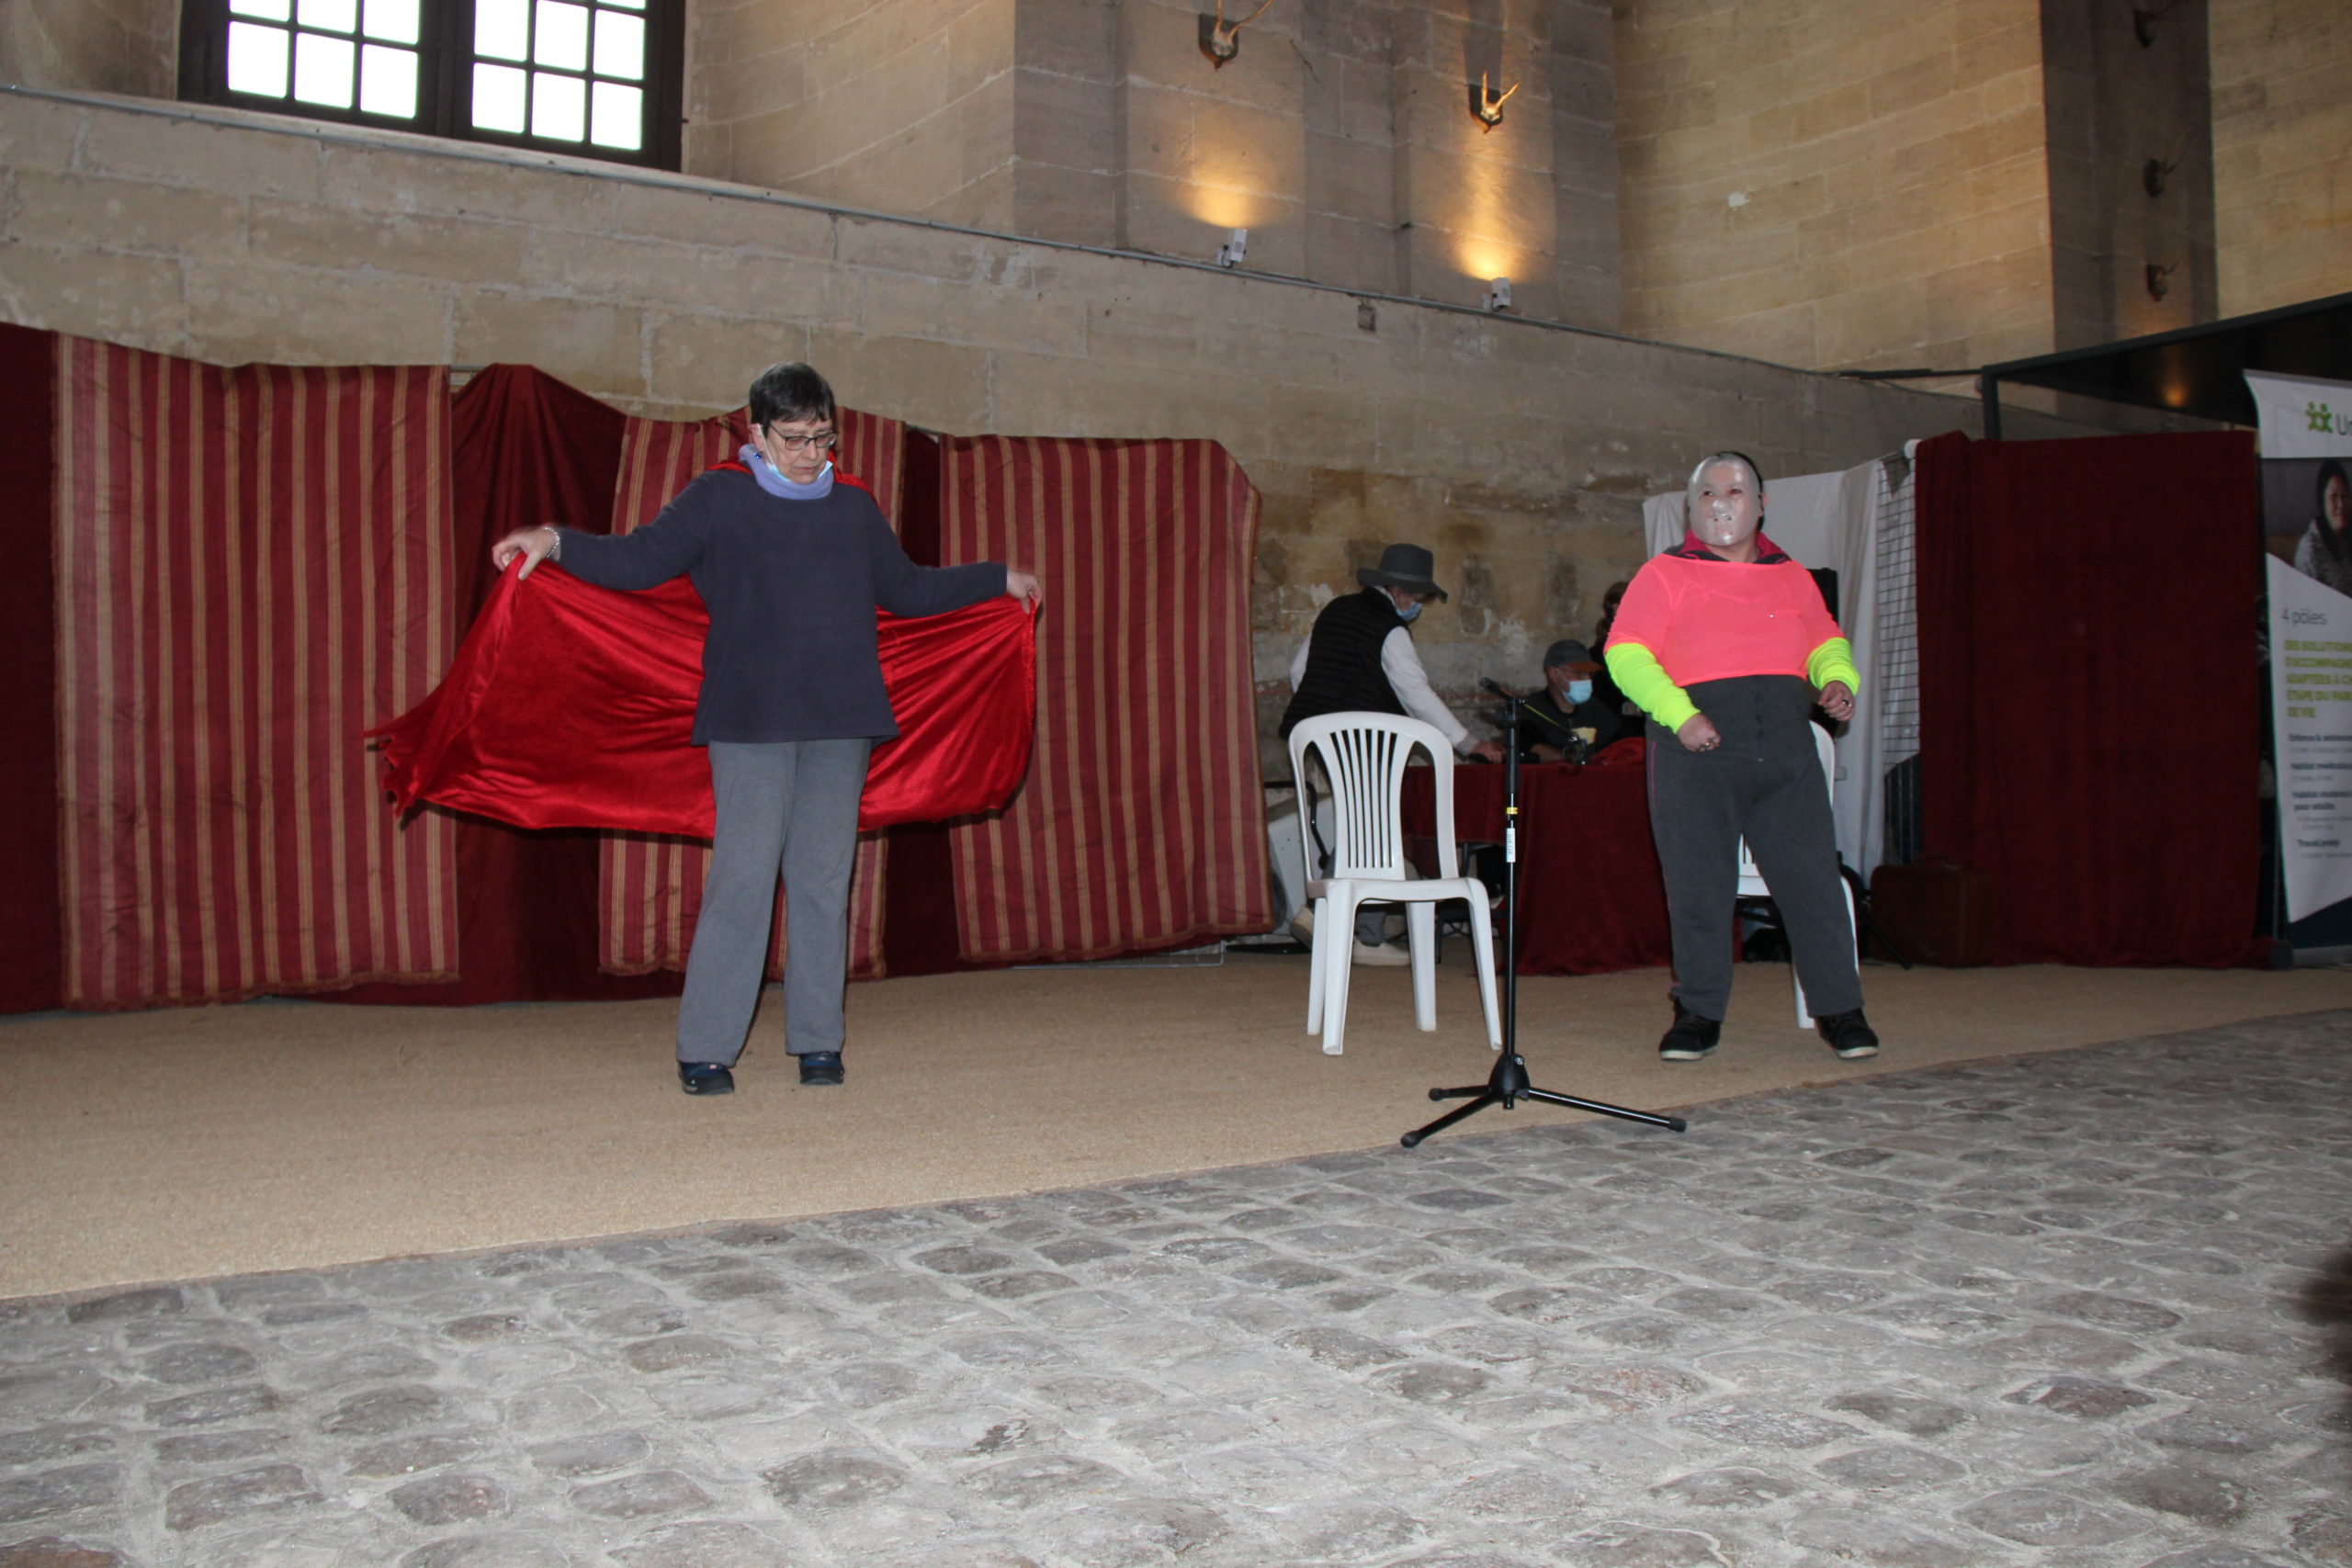 journée festive au château de Chantilly - représentation de théâtre